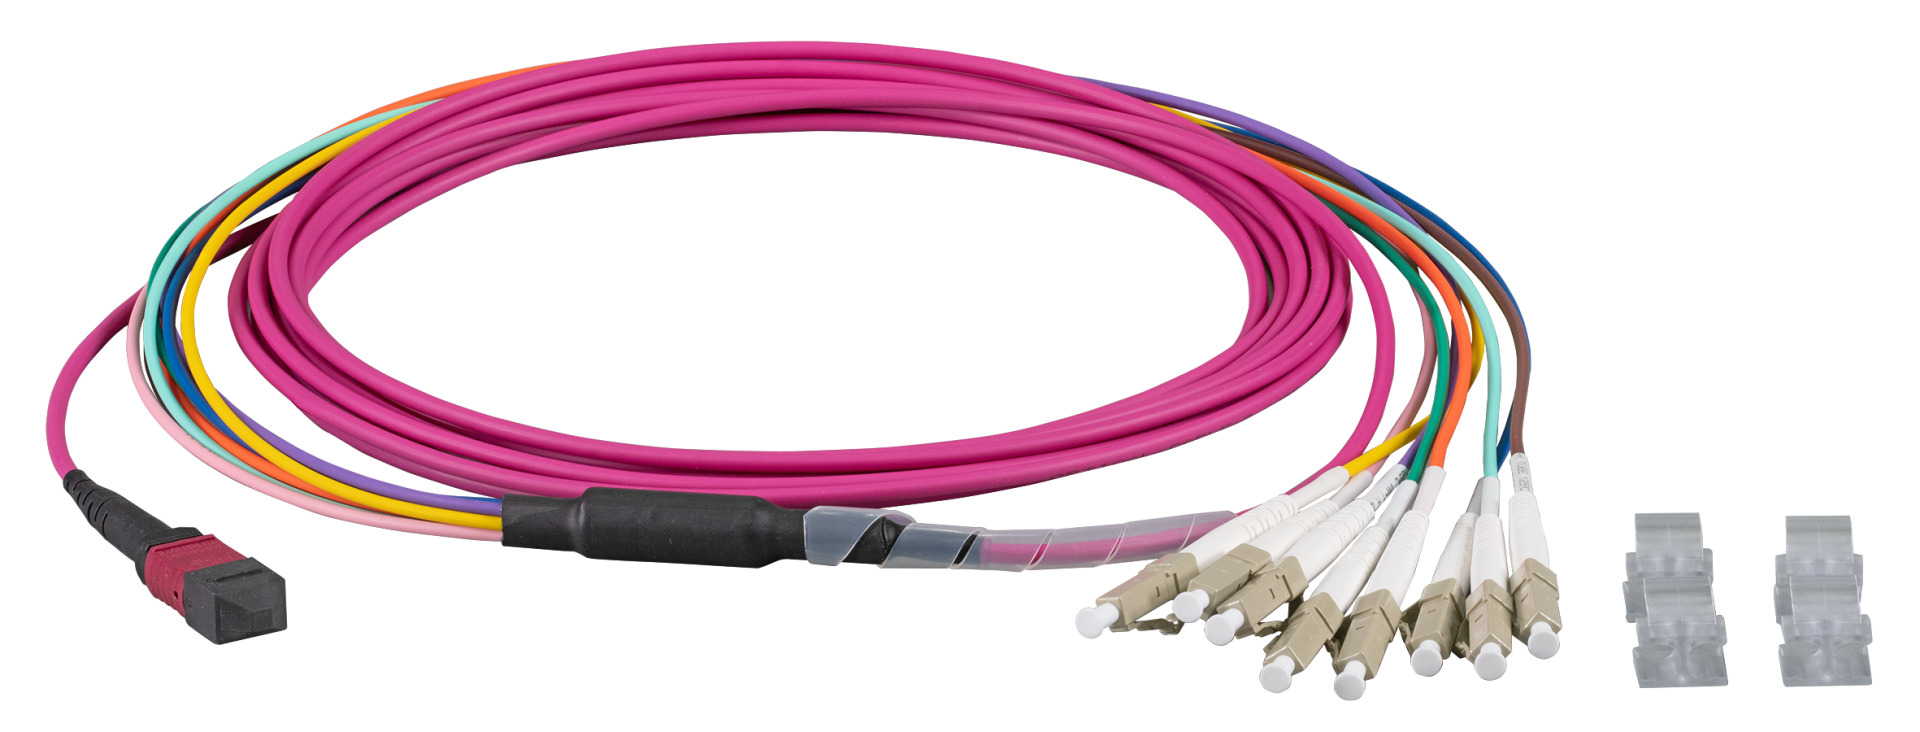 MTP®-F/LC 8-fiber patch cable OM4, LSZH erica-violet, 30m